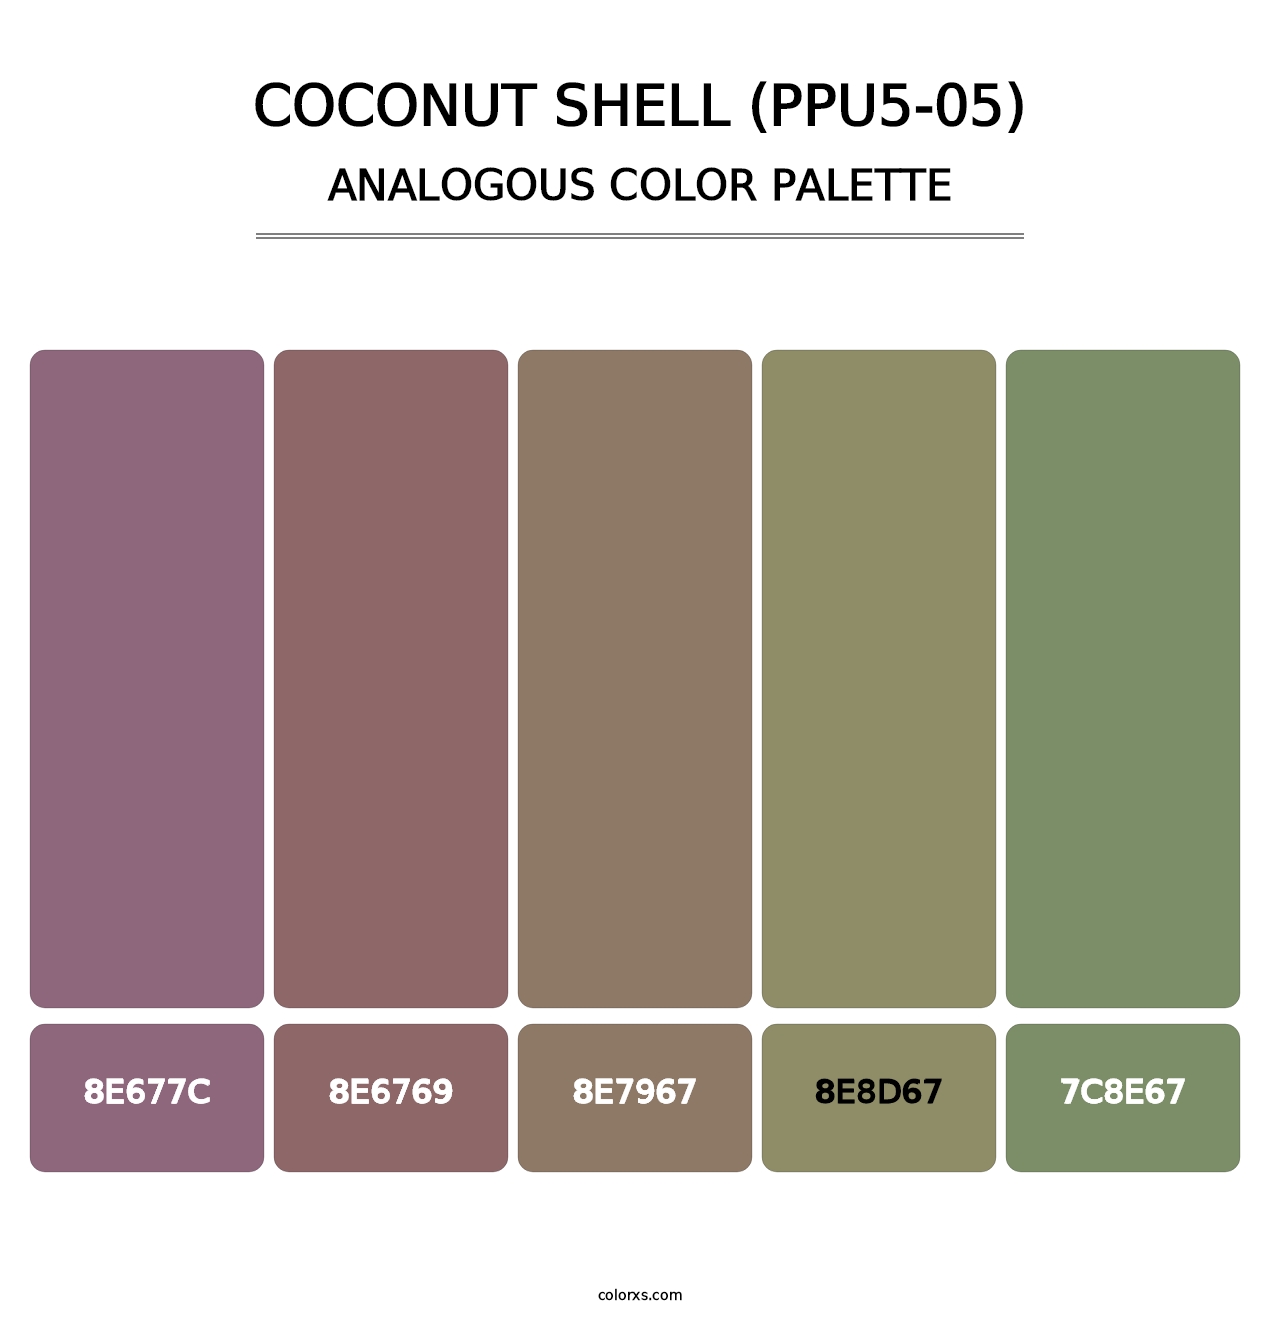 Coconut Shell (PPU5-05) - Analogous Color Palette